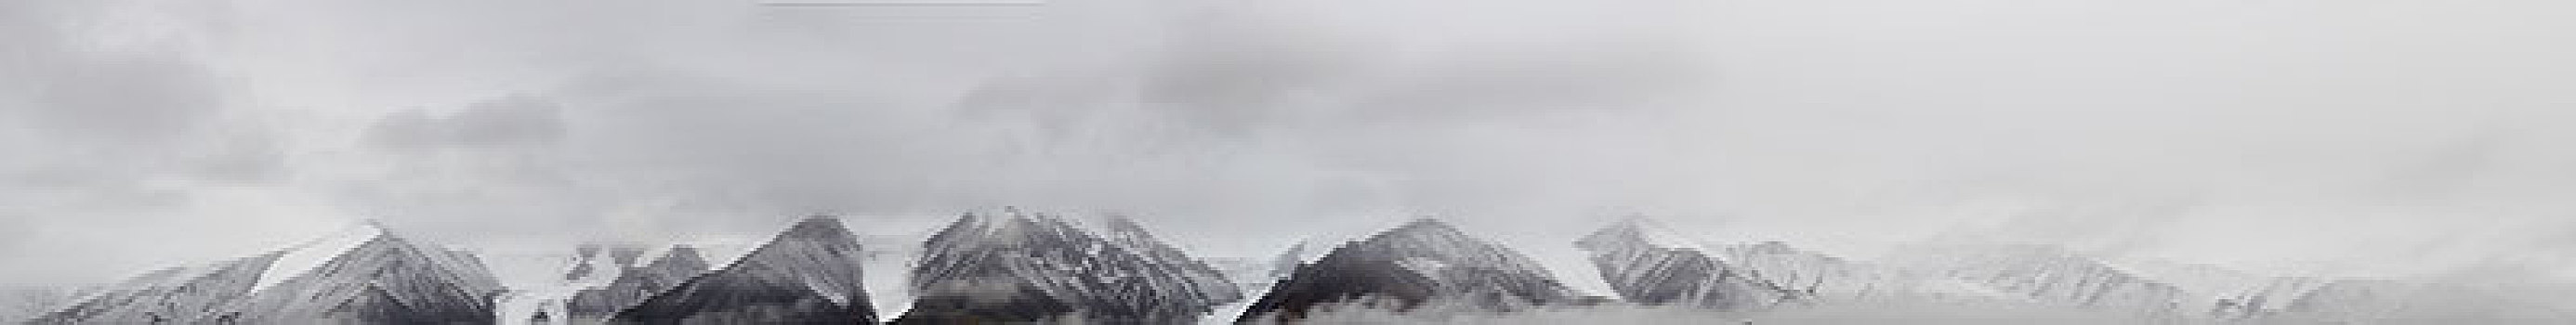 玉珠峰雪山,长幅